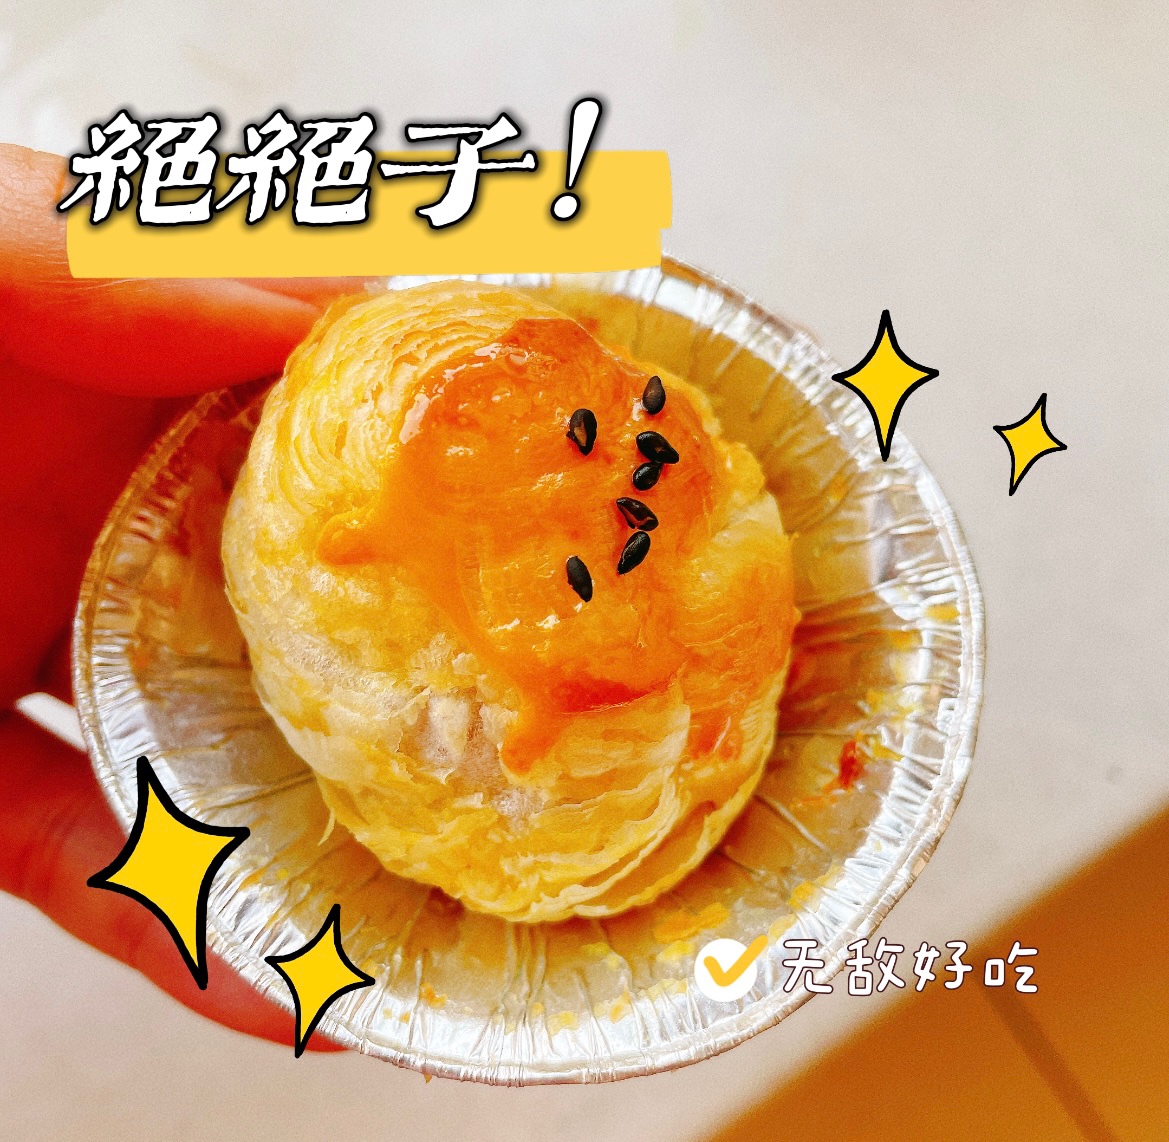 【空气炸锅】蛋挞爆浆汤圆